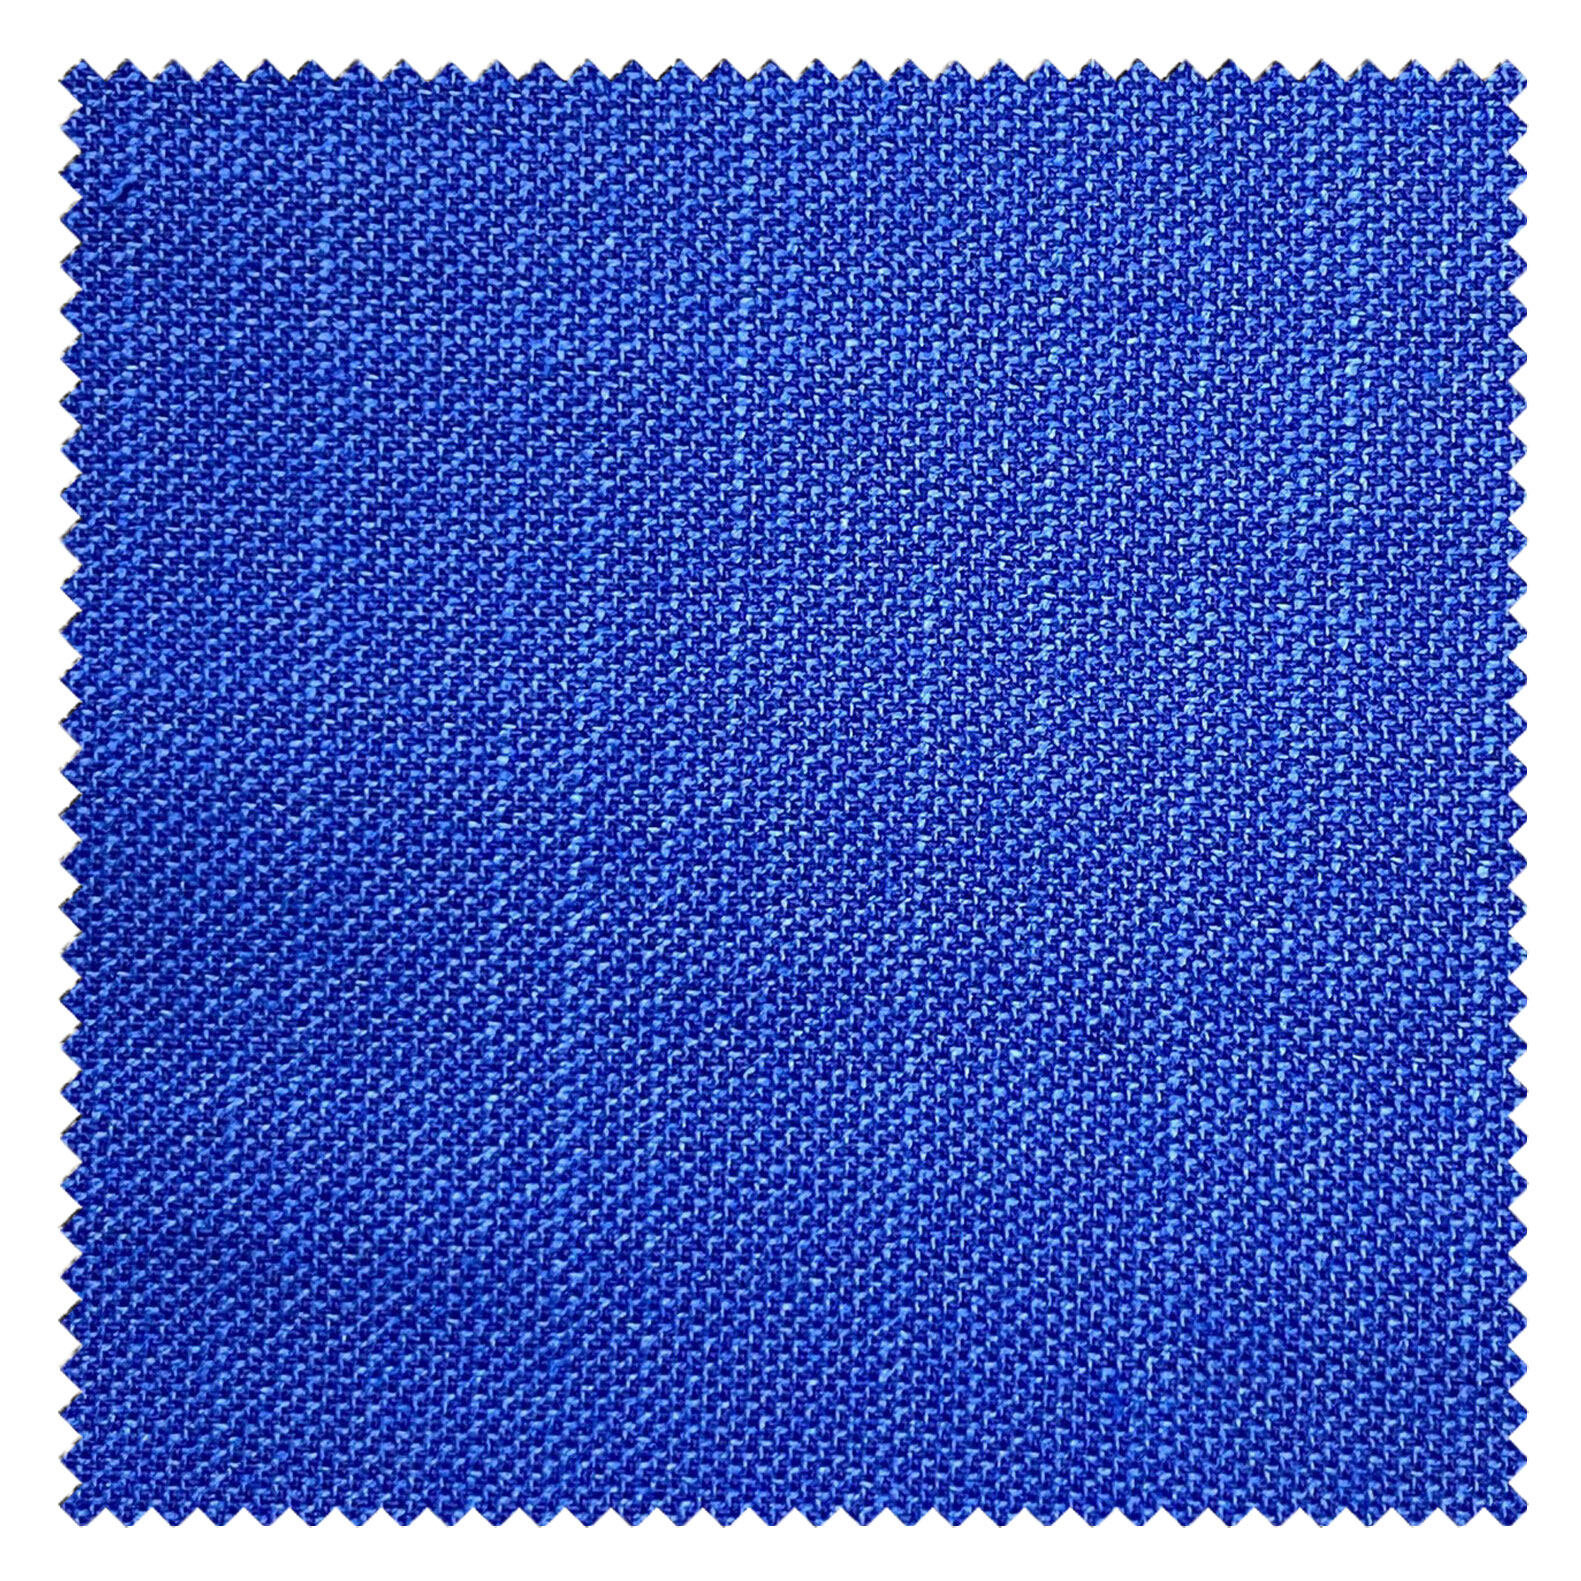 KINGMAN Cashmere Wool Fabric Super Sharkskin AZURE ผ้าตัดชุดสูท สีฟ้าสด กางเกง ผู้ชาย ผ้าตัดเสื้อ ยูนิฟอร์ม ผ้าวูล ผ้าคุณภาพดี กว้าง 60 นิ้ว ยาว 1 เมตร